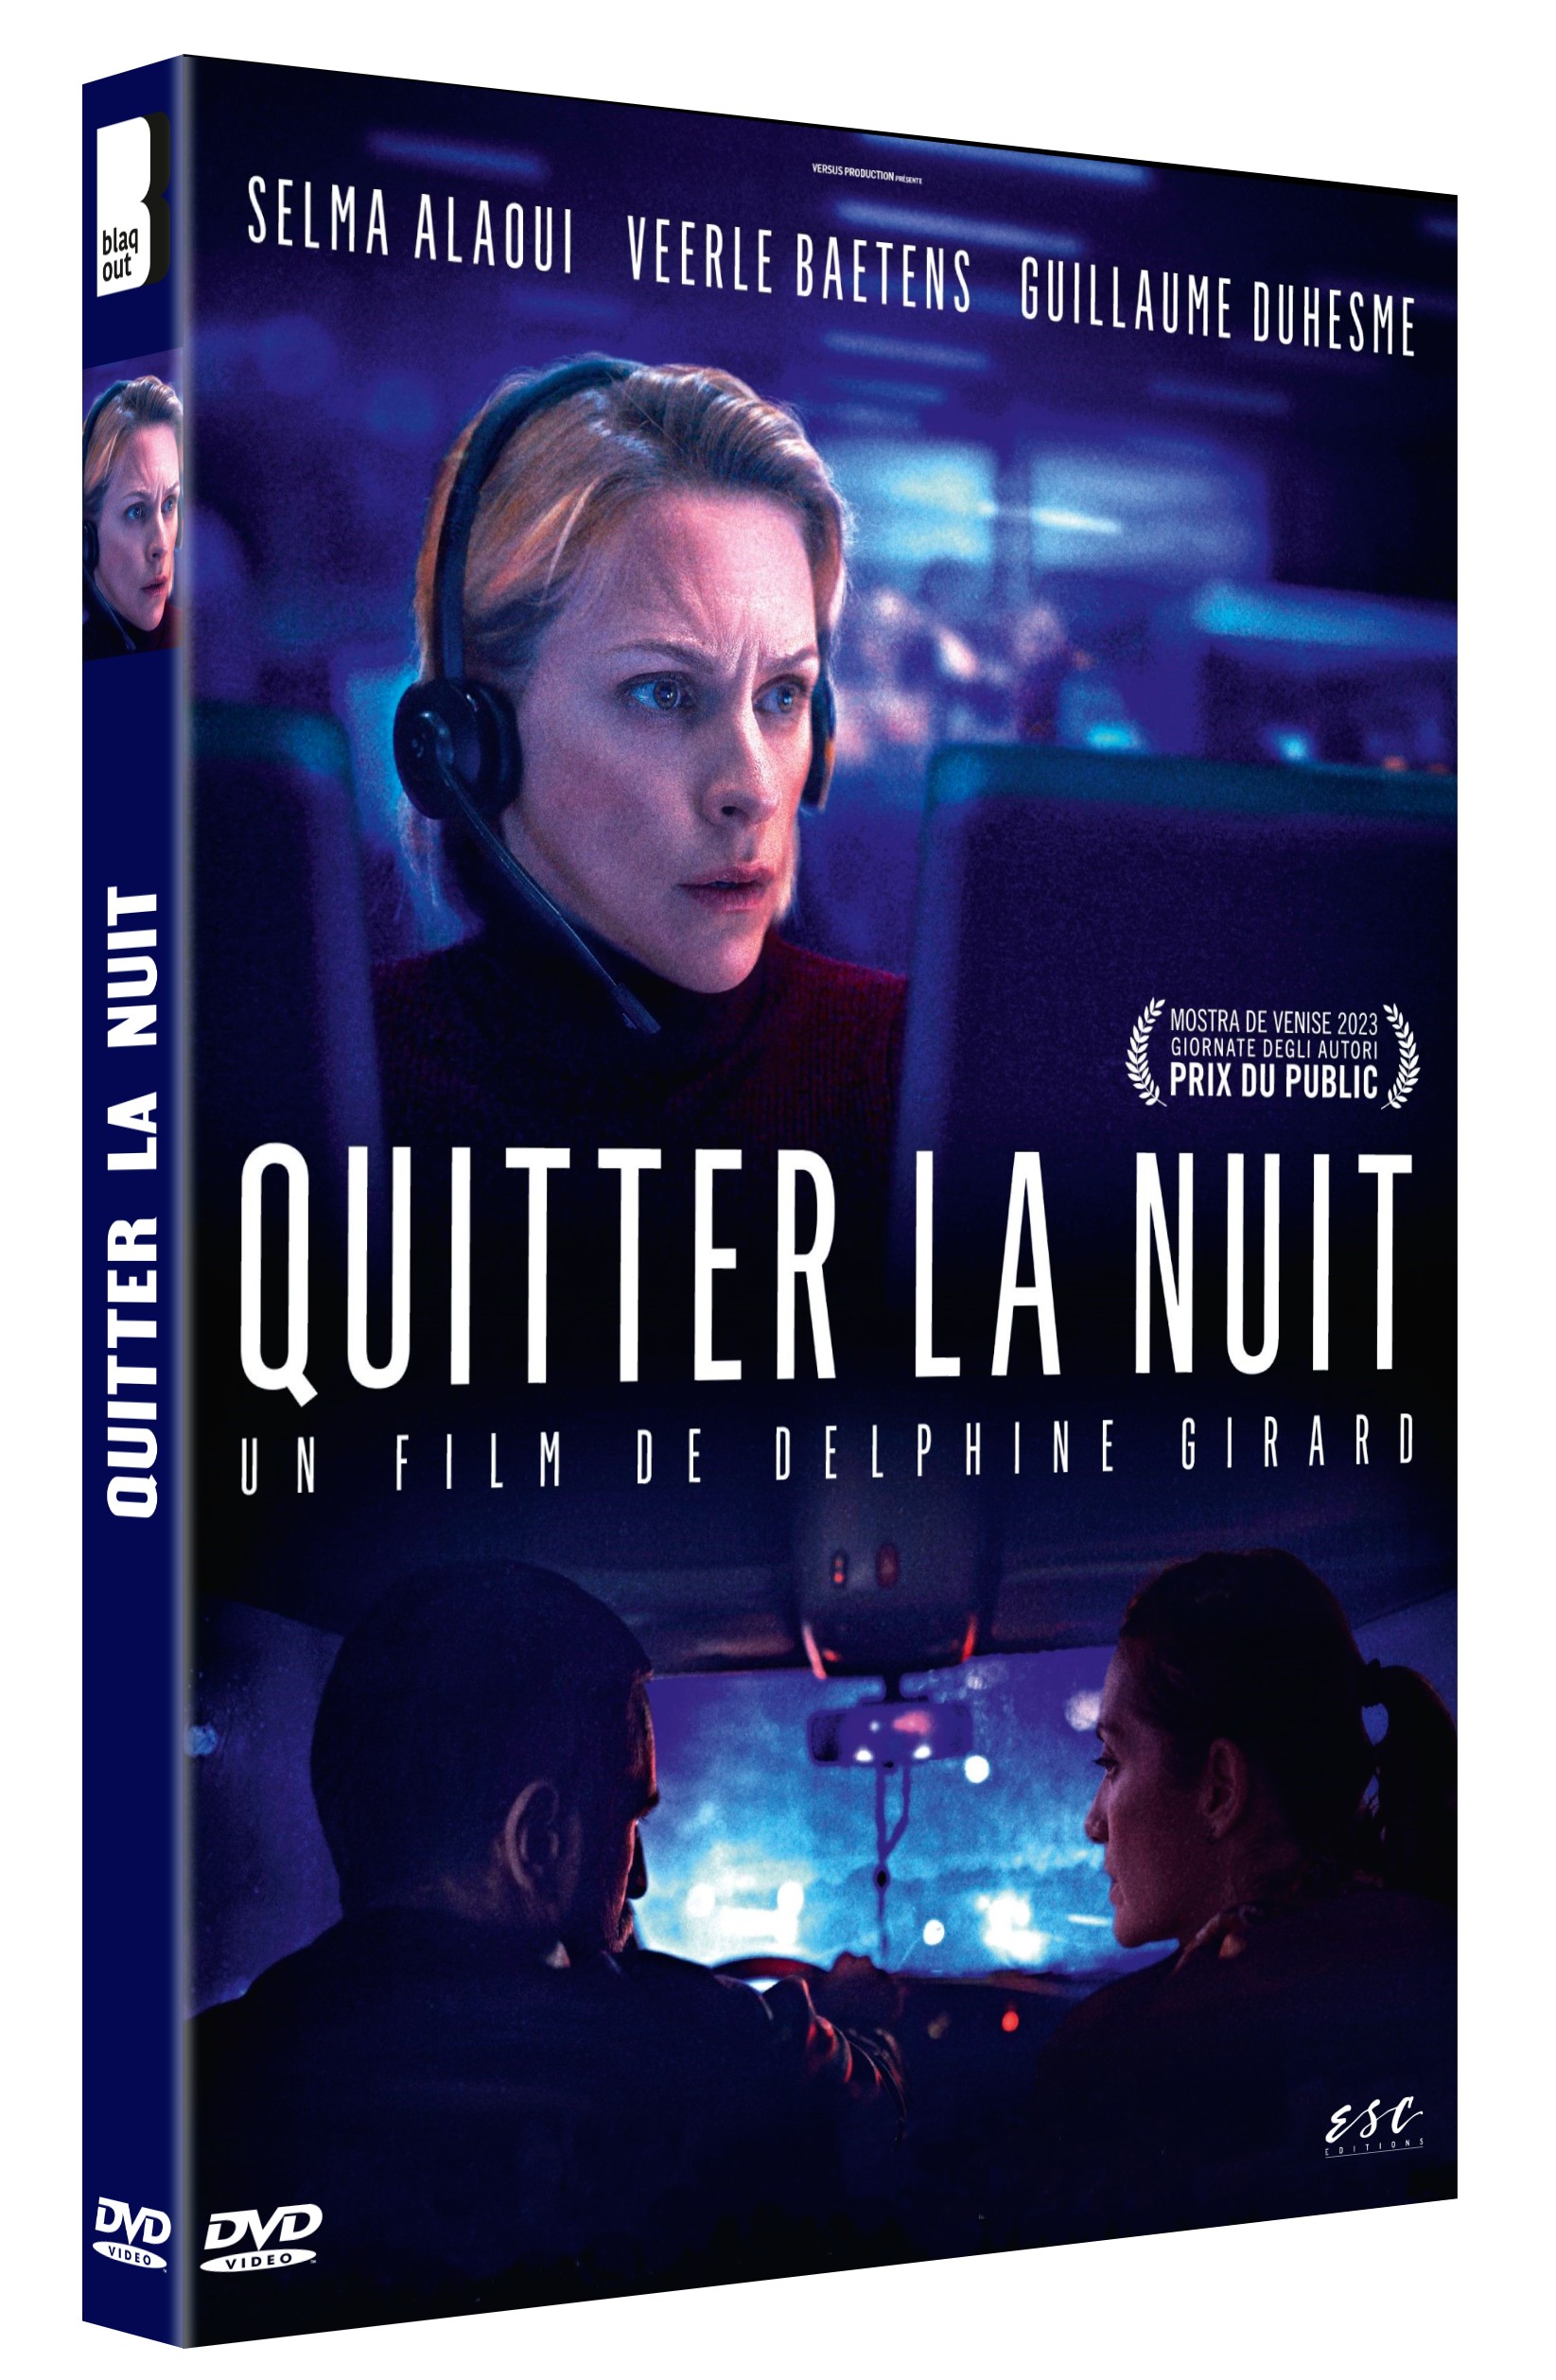 QUITTER LA NUIT - DVD